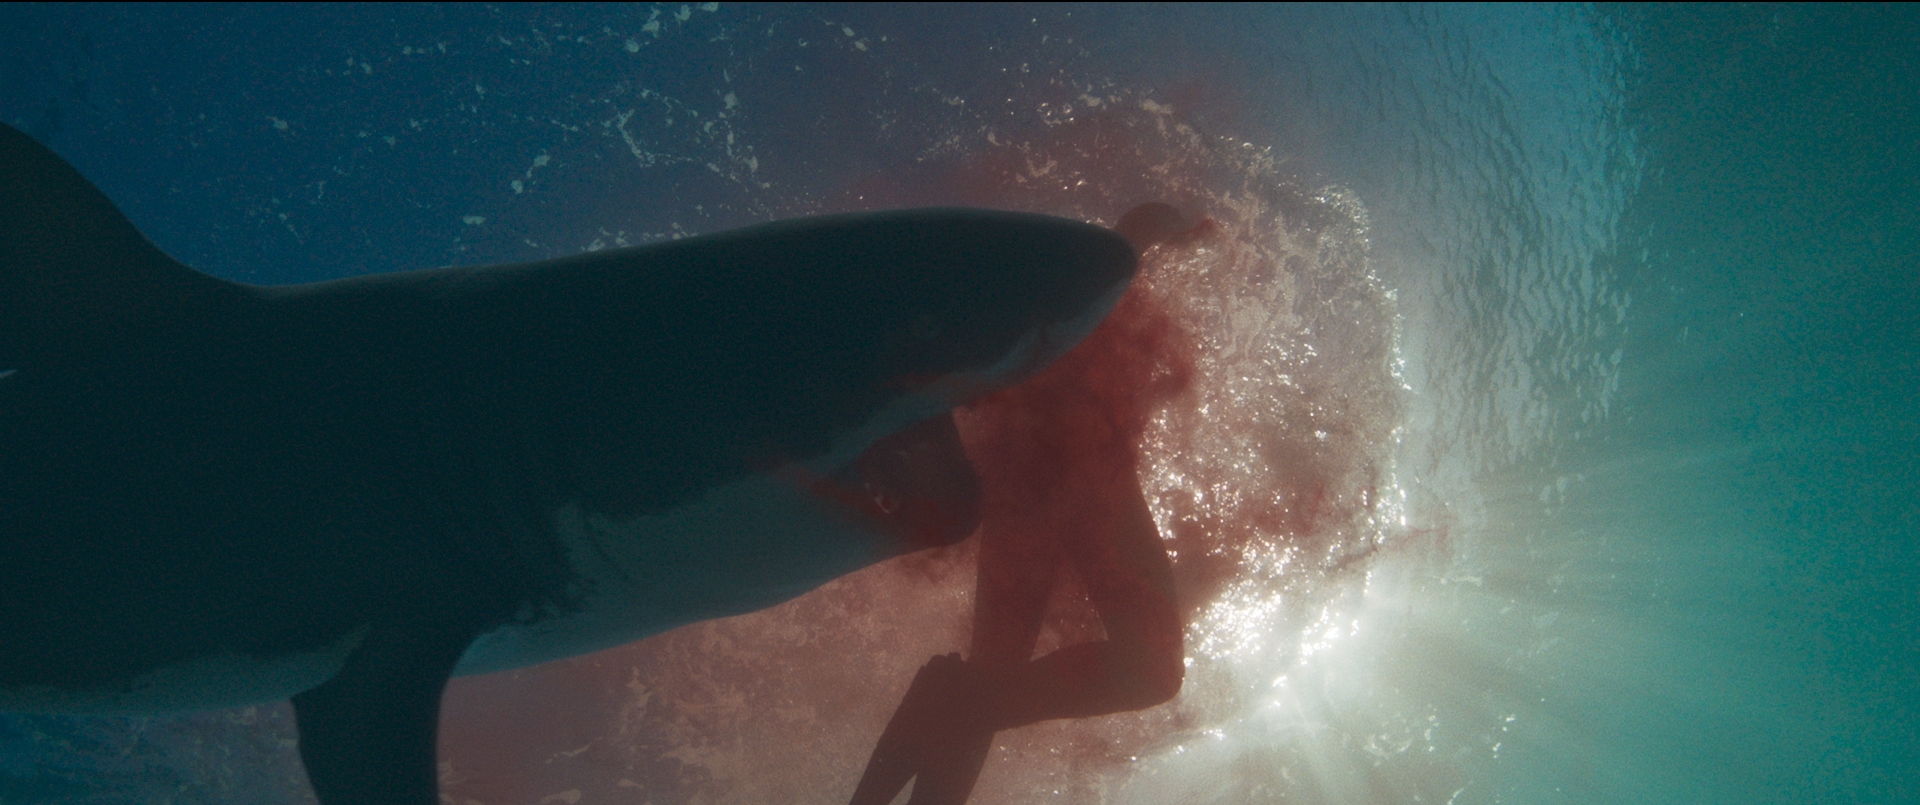 Hàm Tử Thần - Tựa phim rùng rợn xoay quanh đàn cá mập khát máu đáng xem bậc nhất hè này - Ảnh 3.